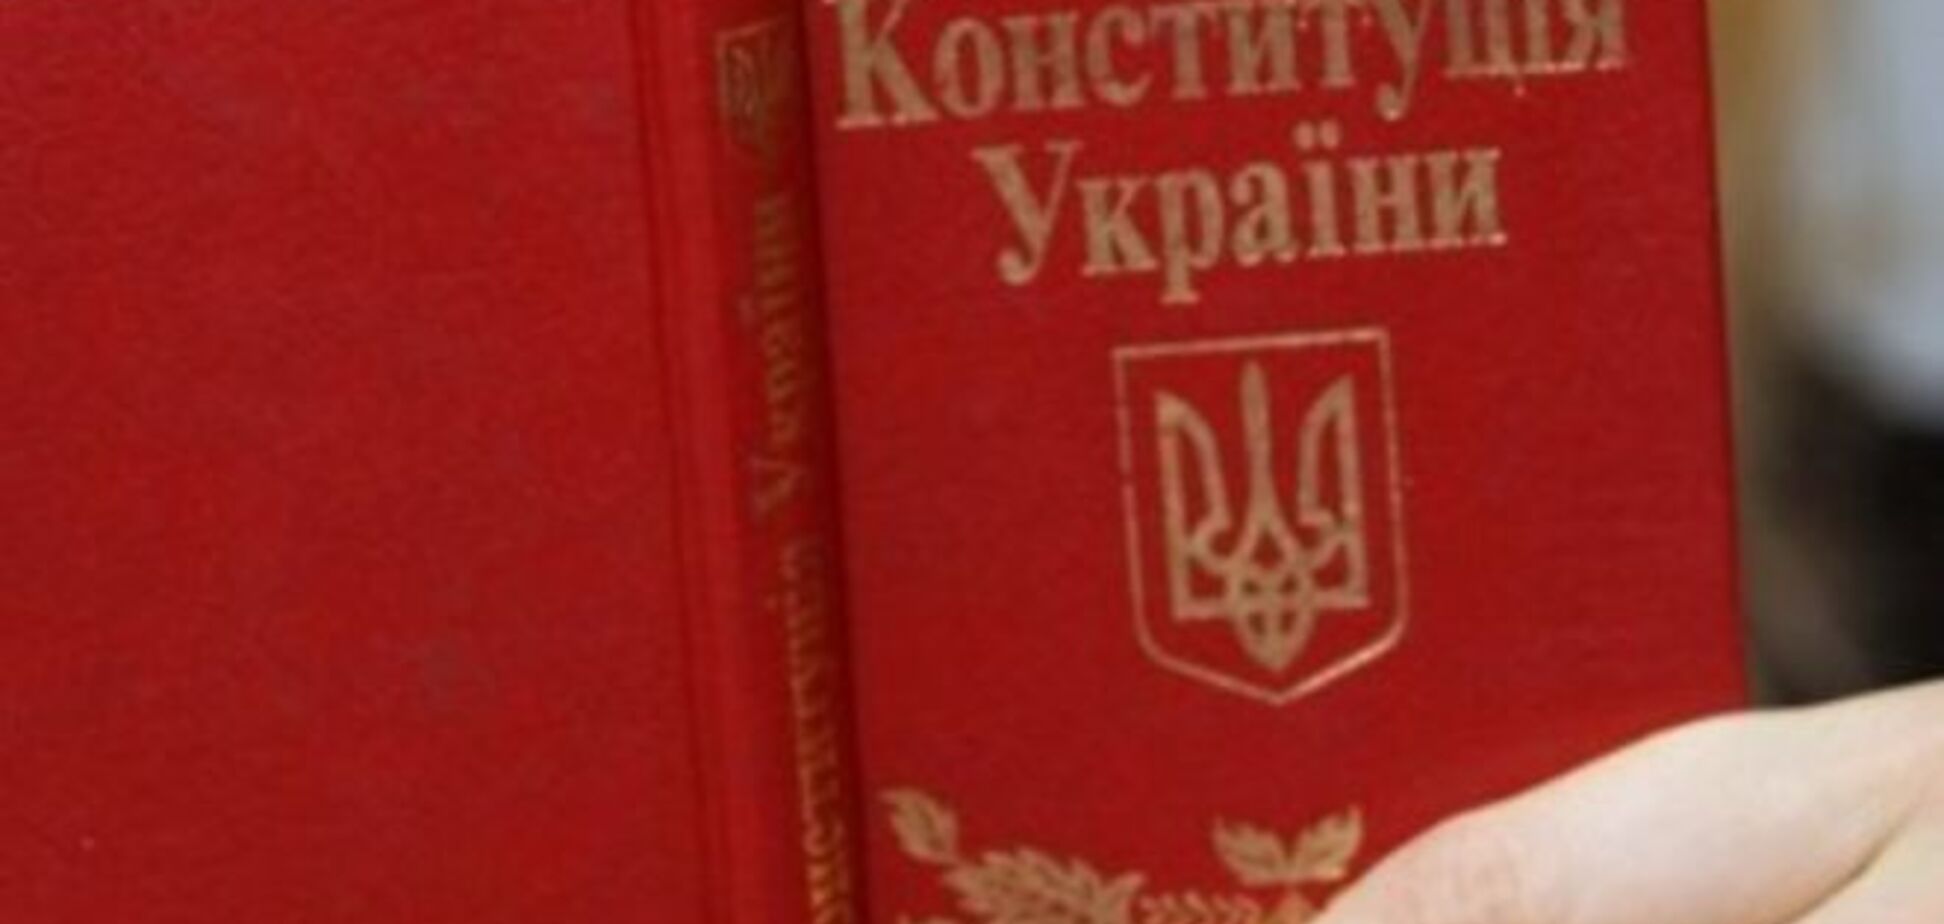 Не читал, но осуждаю: более 40% украинцев в глаза не видели Конституцию